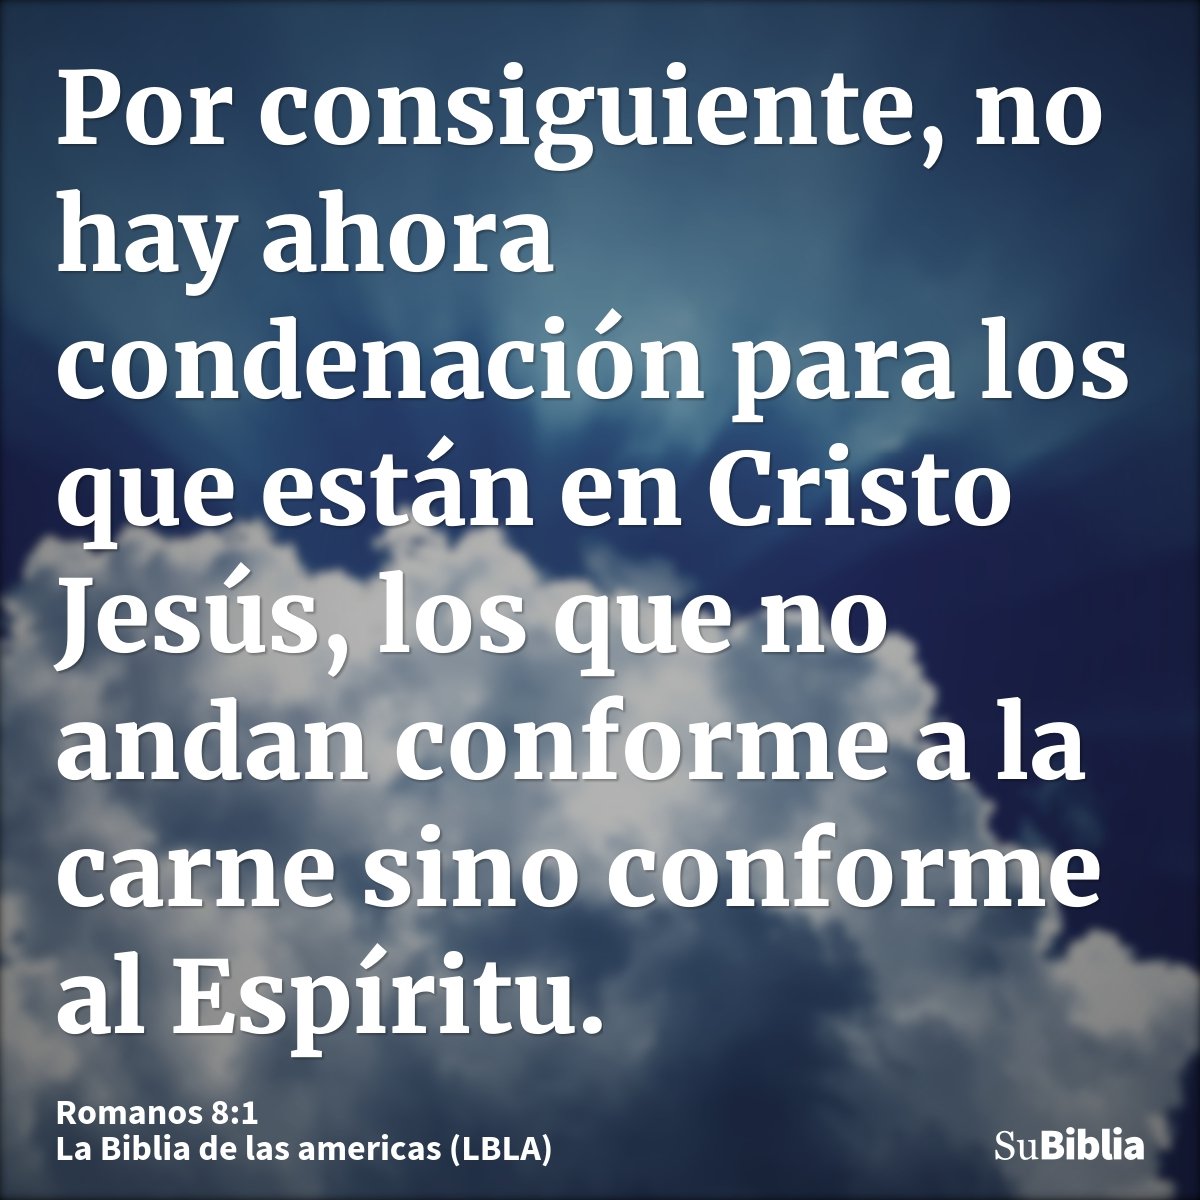 Por consiguiente, no hay ahora condenación para los que están en Cristo Jesús, los que no andan conforme a la carne sino conforme al Espíritu.